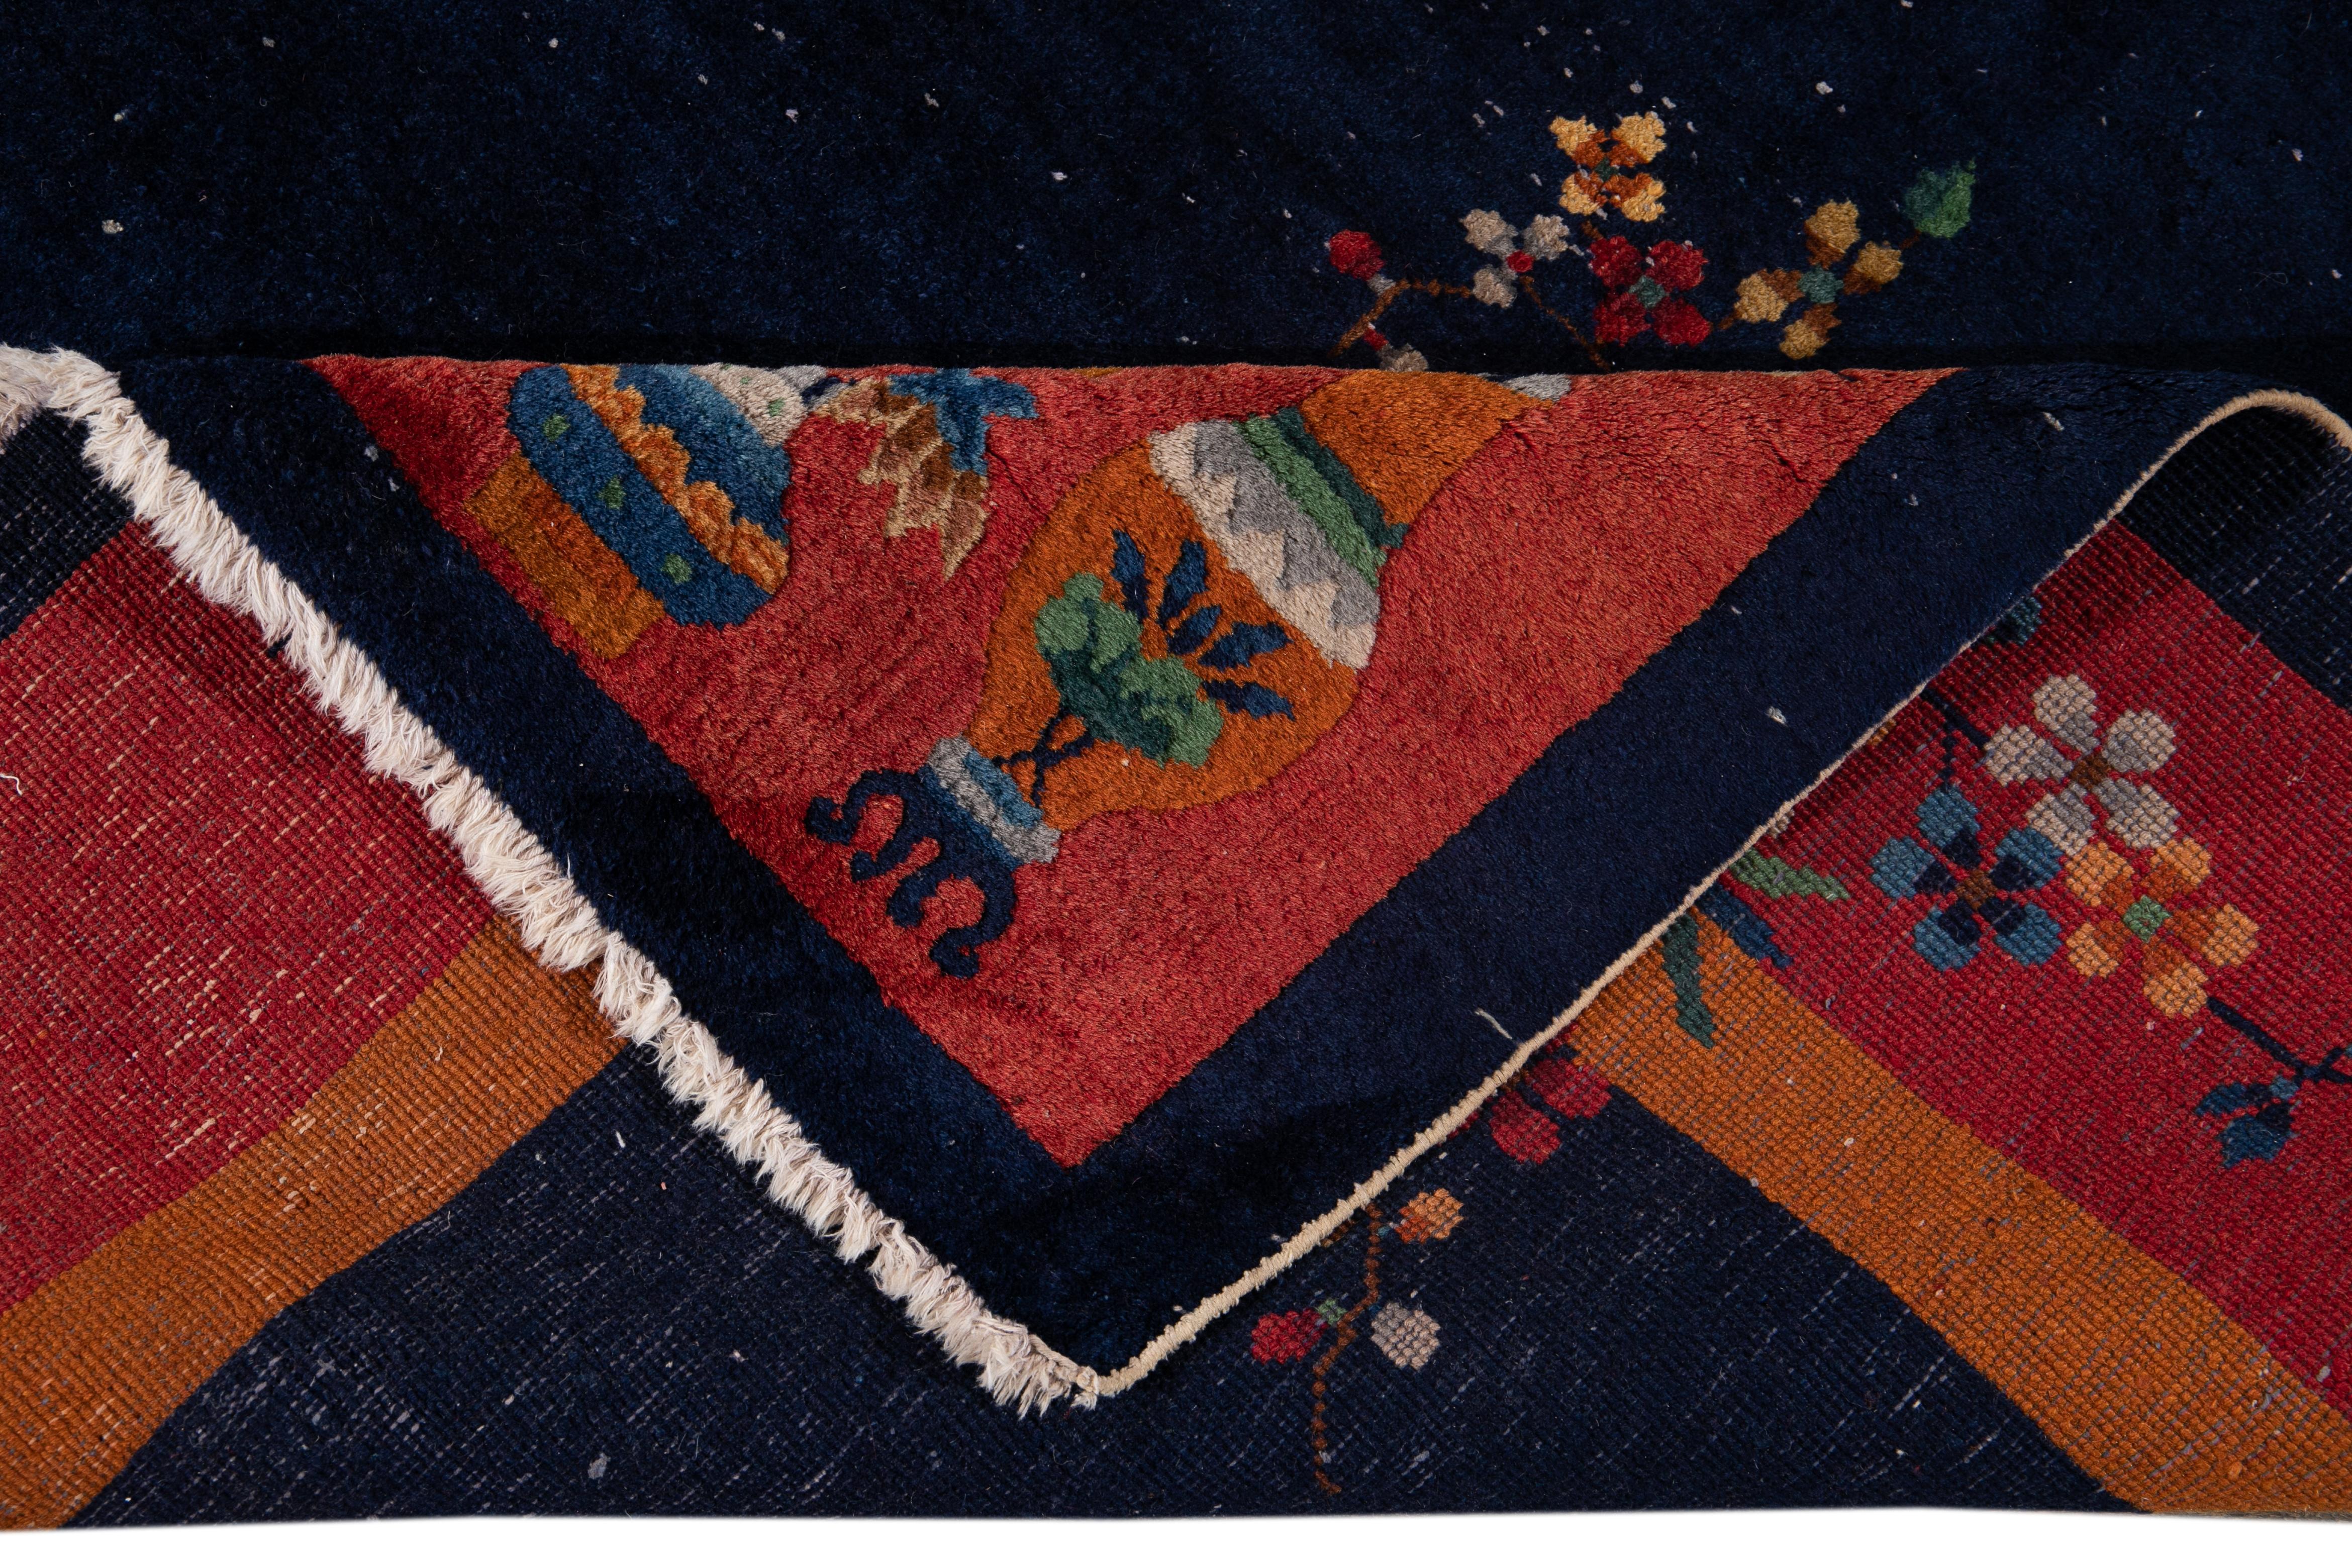 Schöner antiker chinesischer Art-Déco-Teppich aus handgeknüpfter Wolle mit dunkelblauem Feld, orangefarbener und roter Umrandung in einem subtilen Allover-Muster aus klassischen chinesischen Blumen.
Dieser Teppich misst: 7